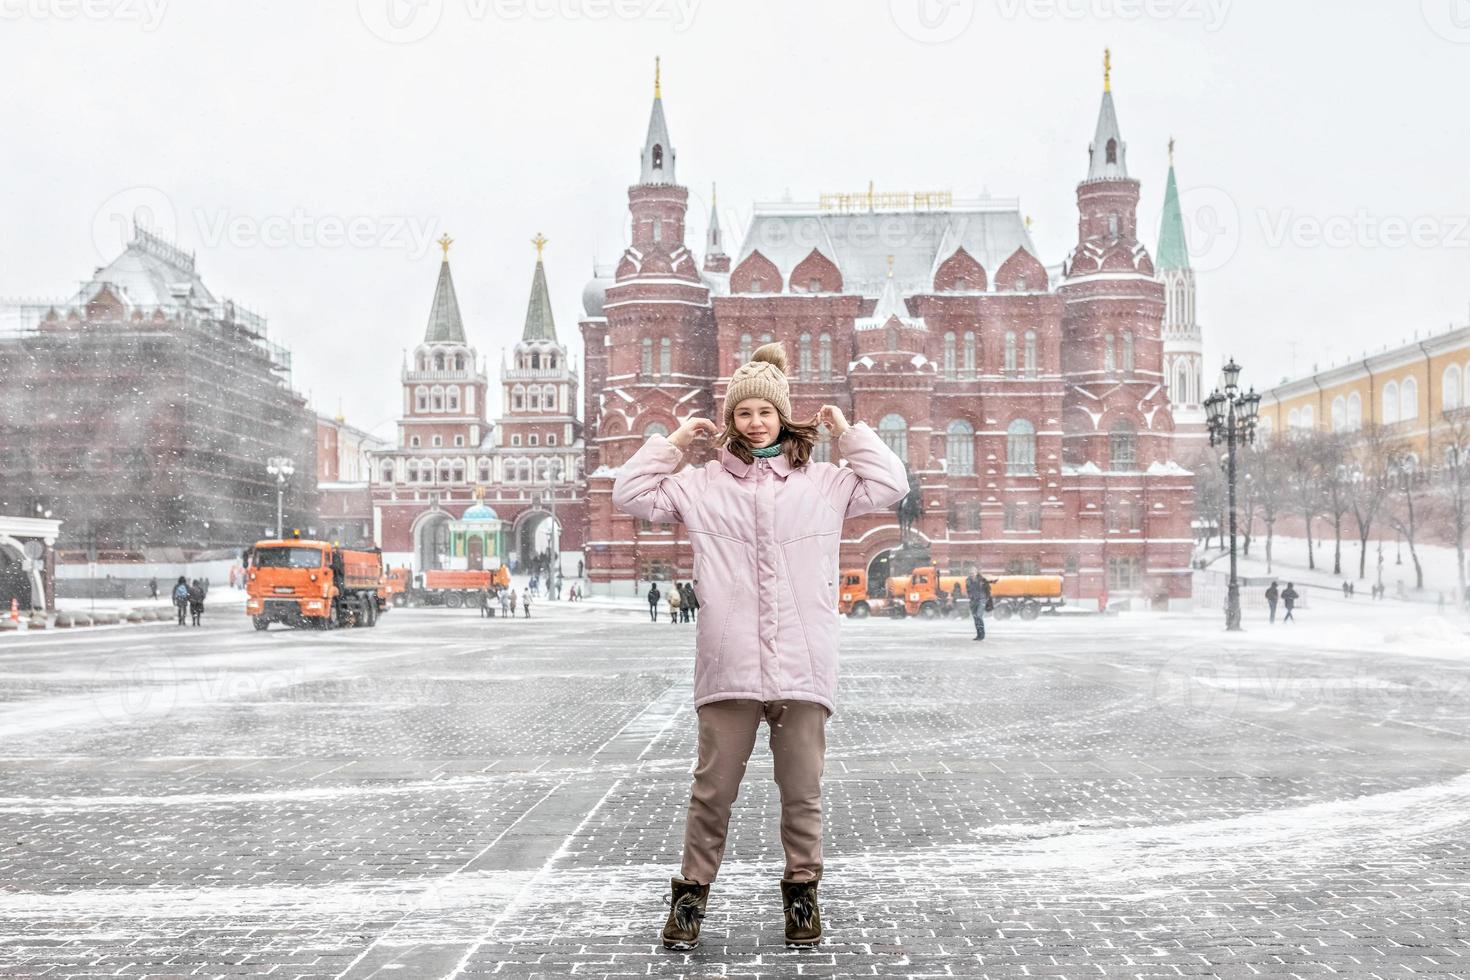 une belle jeune fille vêtue d'une veste rose se promène le long de la place manezhnaya à moscou lors d'une chute de neige et d'un blizzard. les souffleuses à neige travaillent en arrière-plan. photo